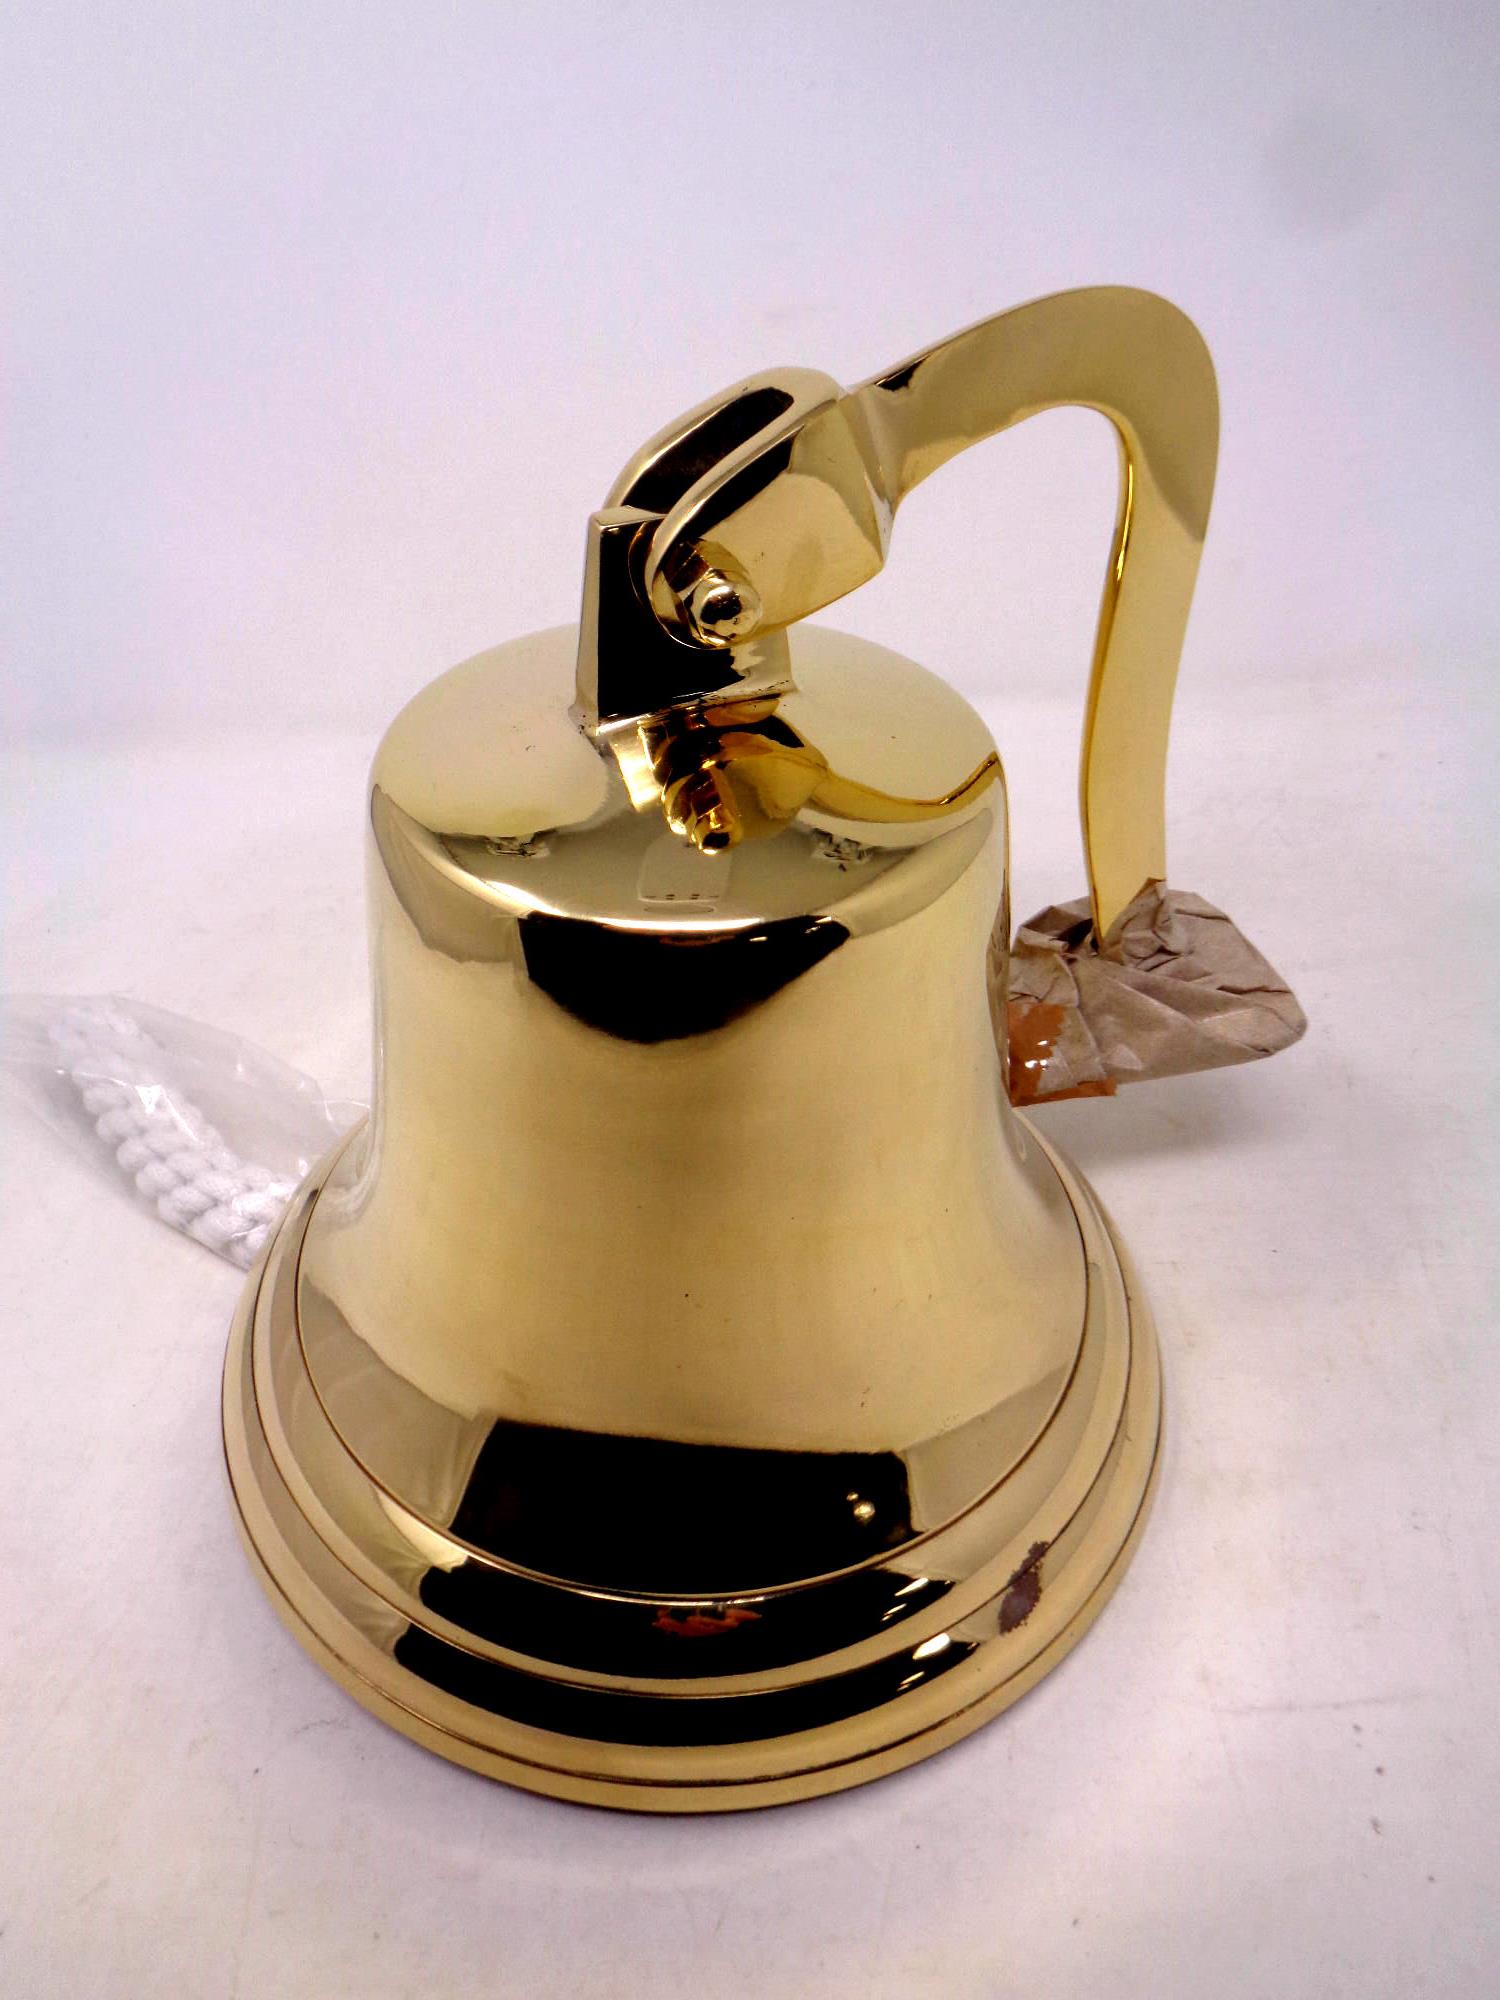 An eight inch brass bell